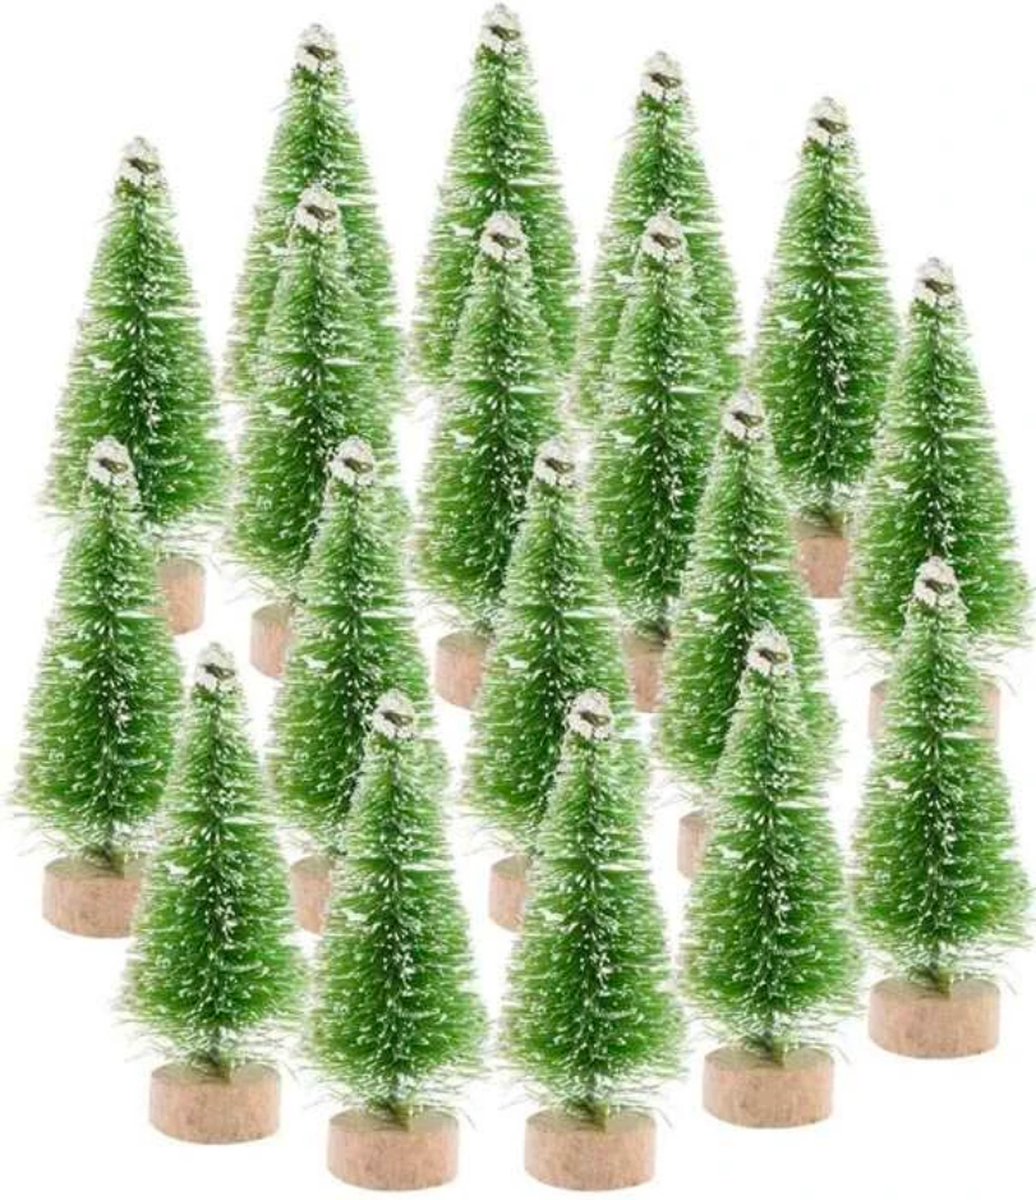 Mini Kerstboom - 12 stuks - Miniatuur Kerstboompjes - Kerstversiering - Kerstdecoratie Voor Binnen - Kerstcadeau - Kleine Kerstbomen